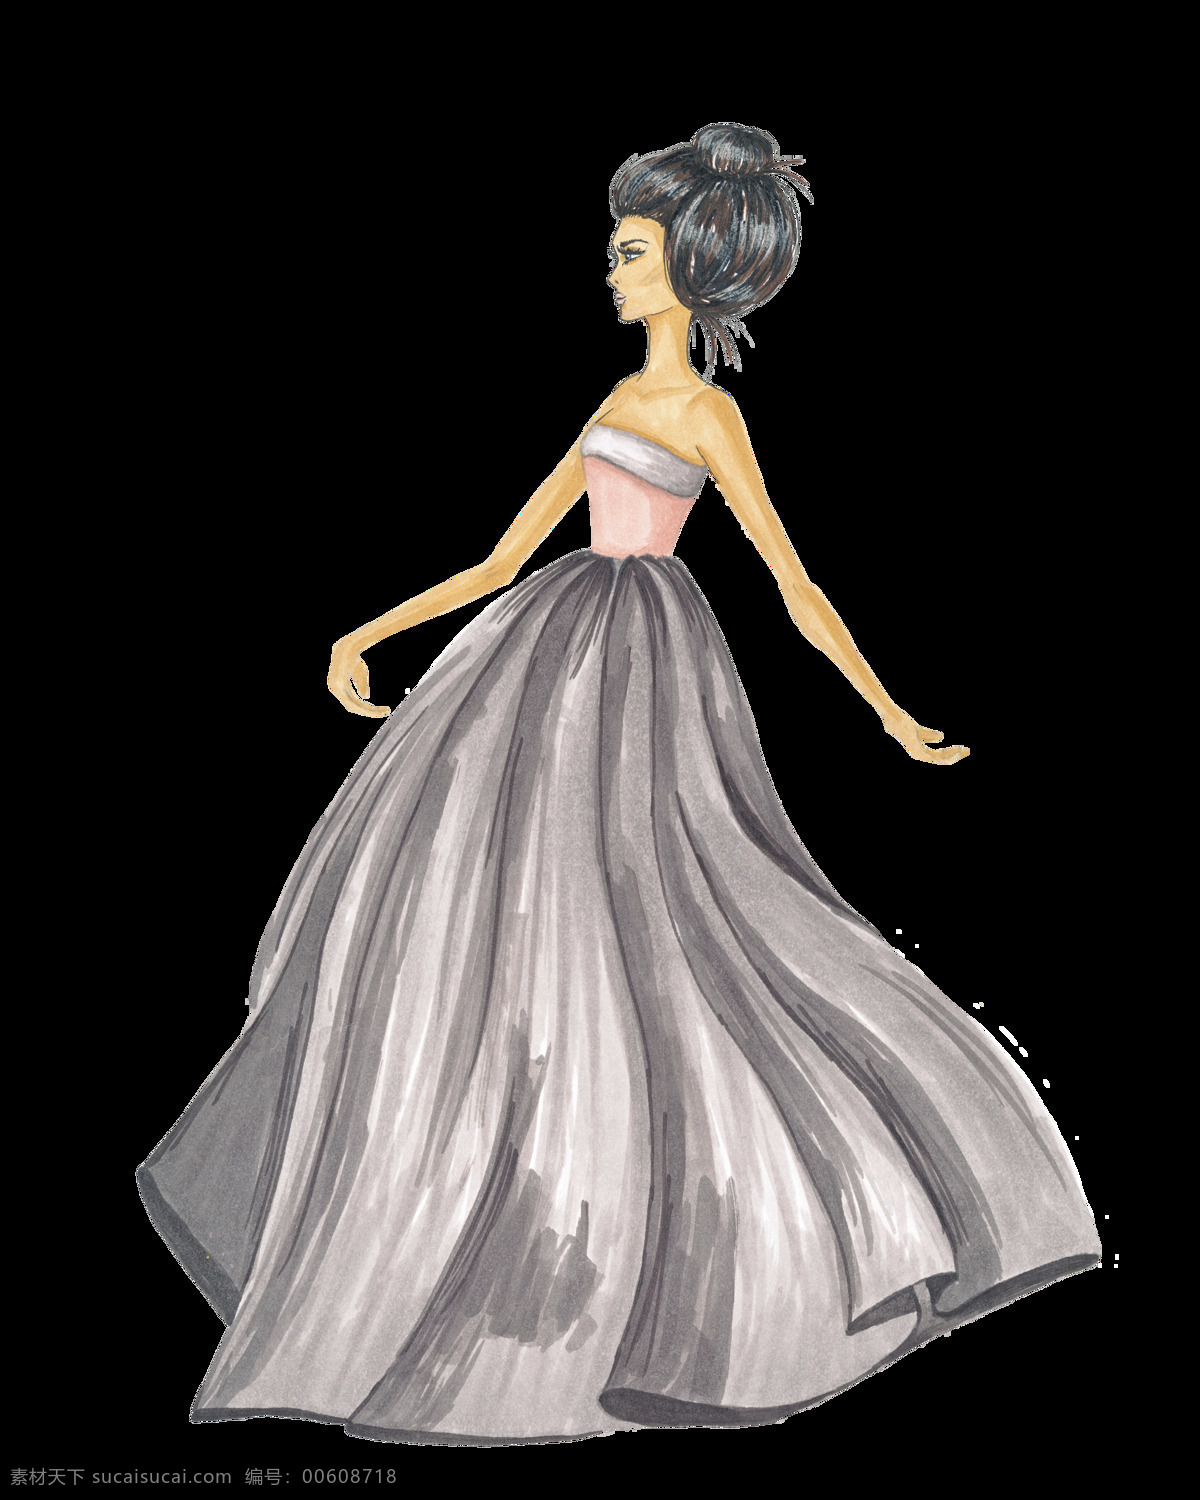 少女透明素材 少女 手绘 裙子 灰色 矢量素材 设计素材